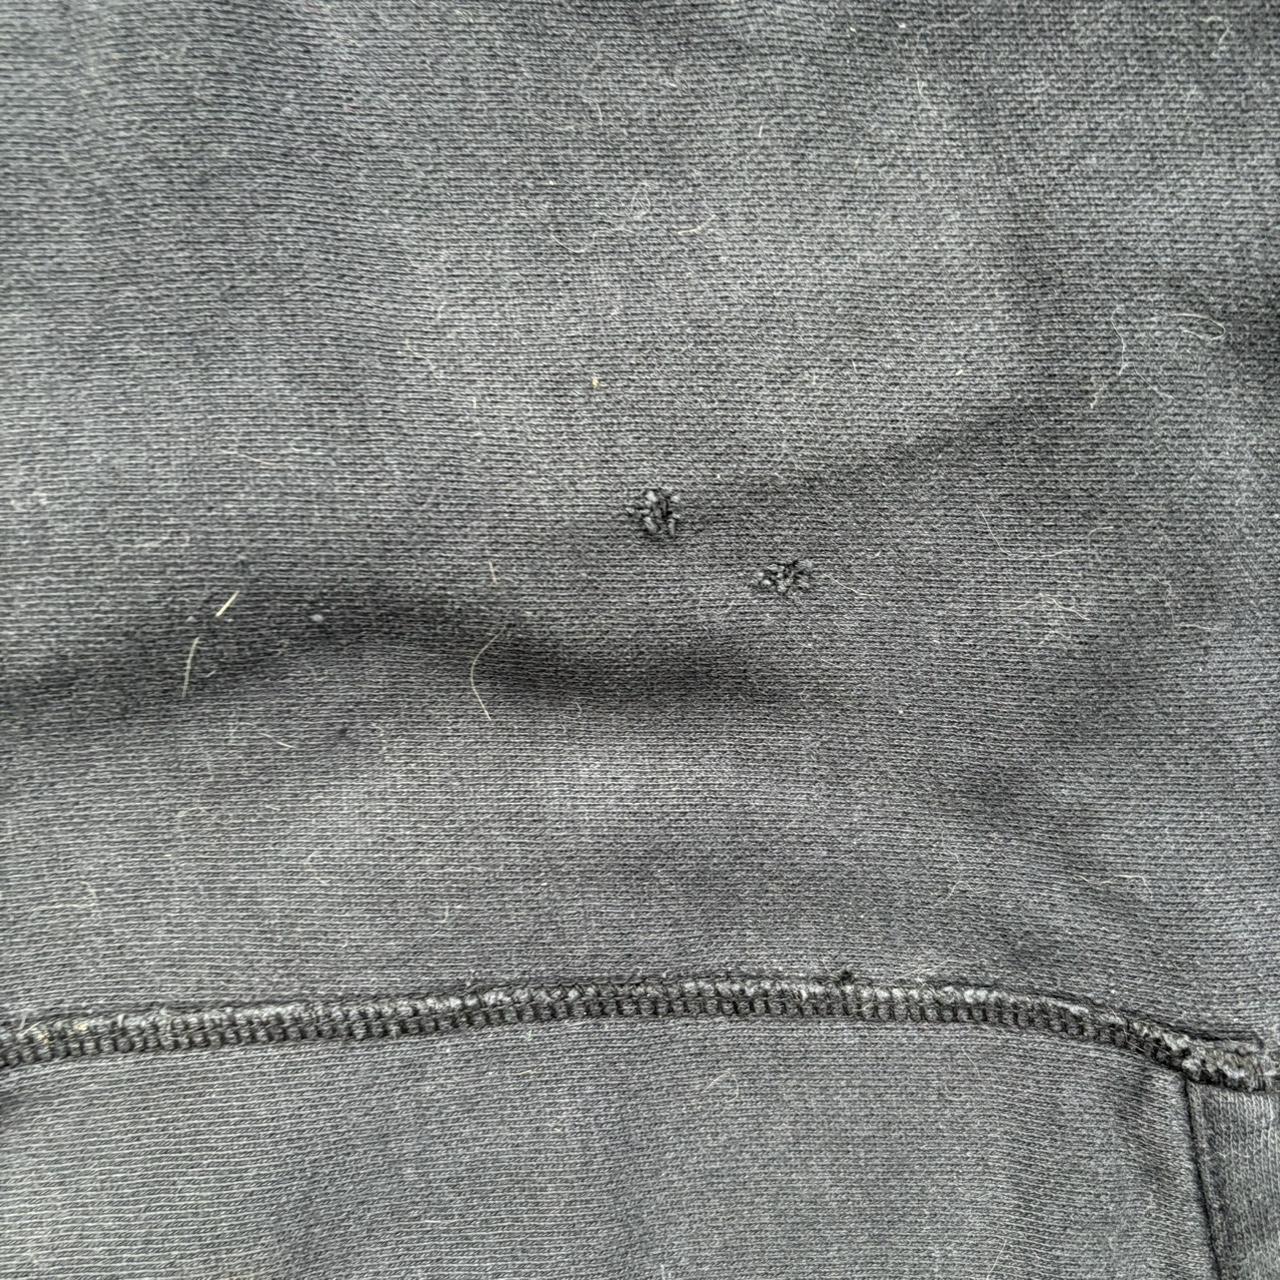 Vintage gap hoodie. *paint stain* *small... - Depop